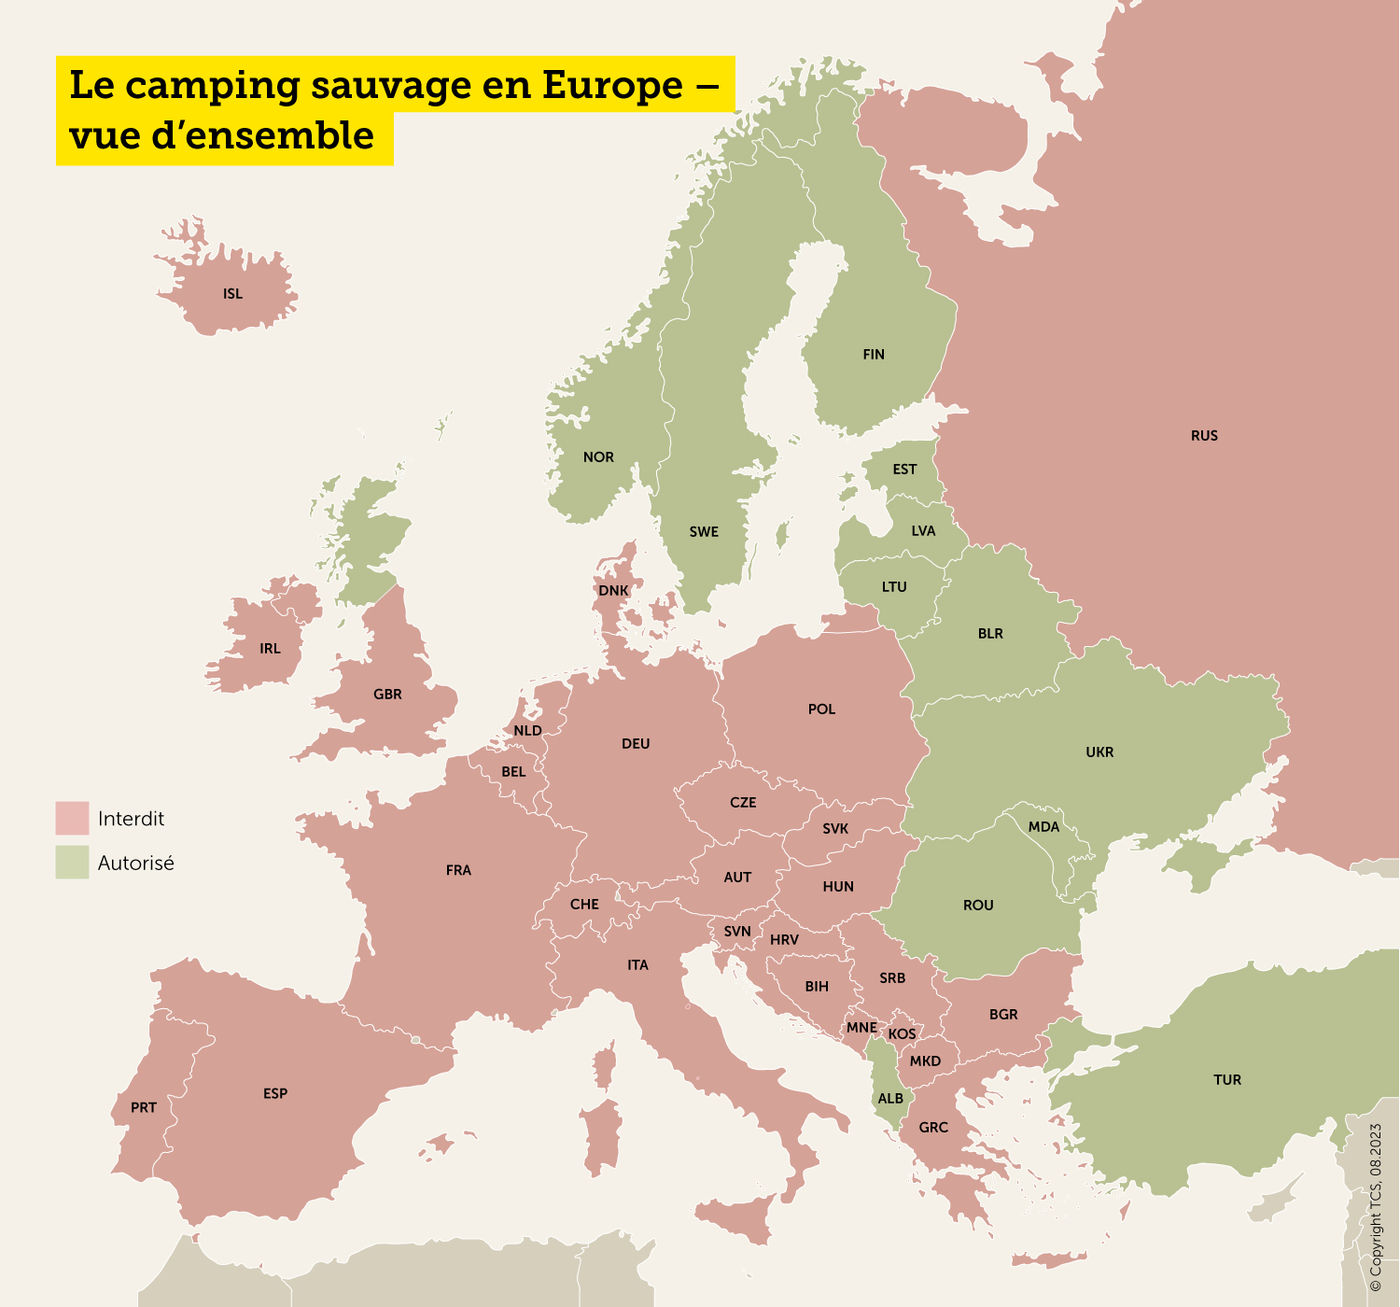 Le camping sauvage en Europe - vue d'ensemble